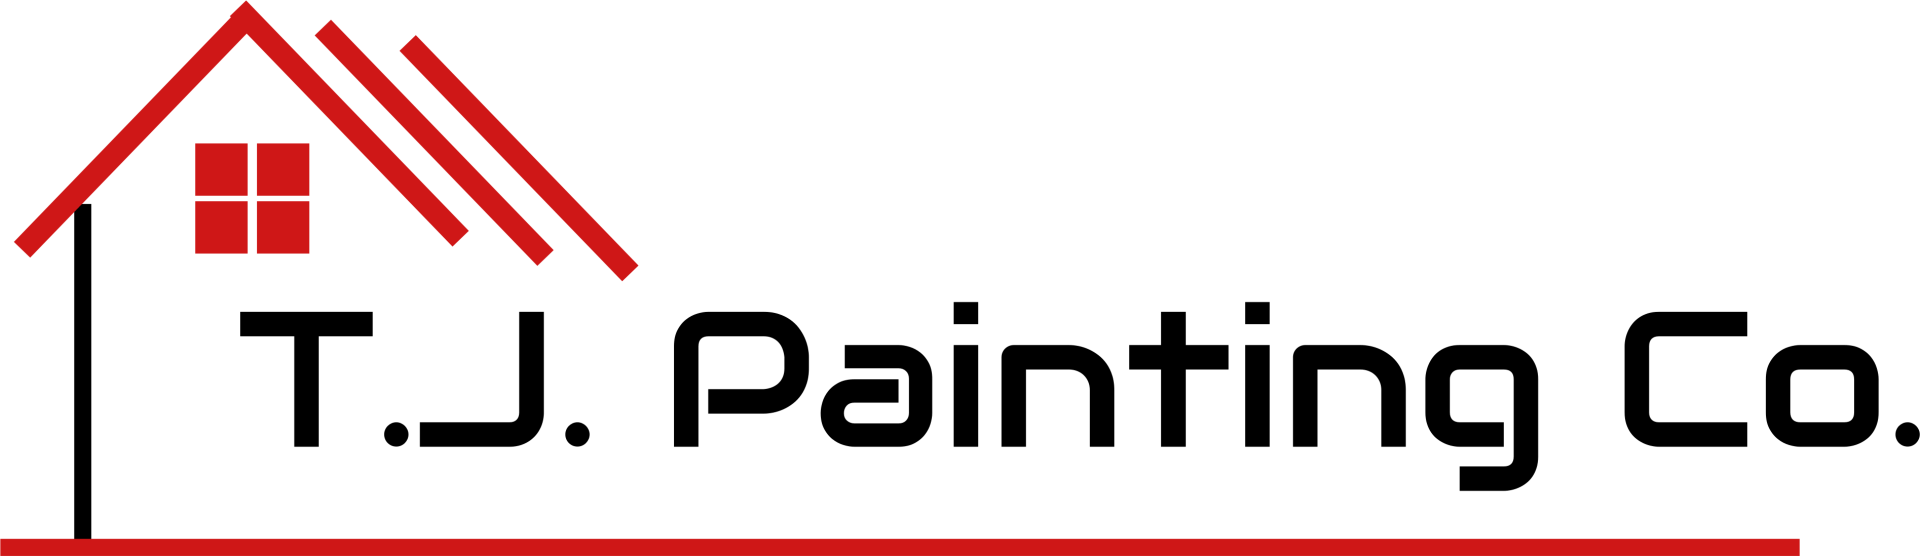 TJ Painting Company - Logo